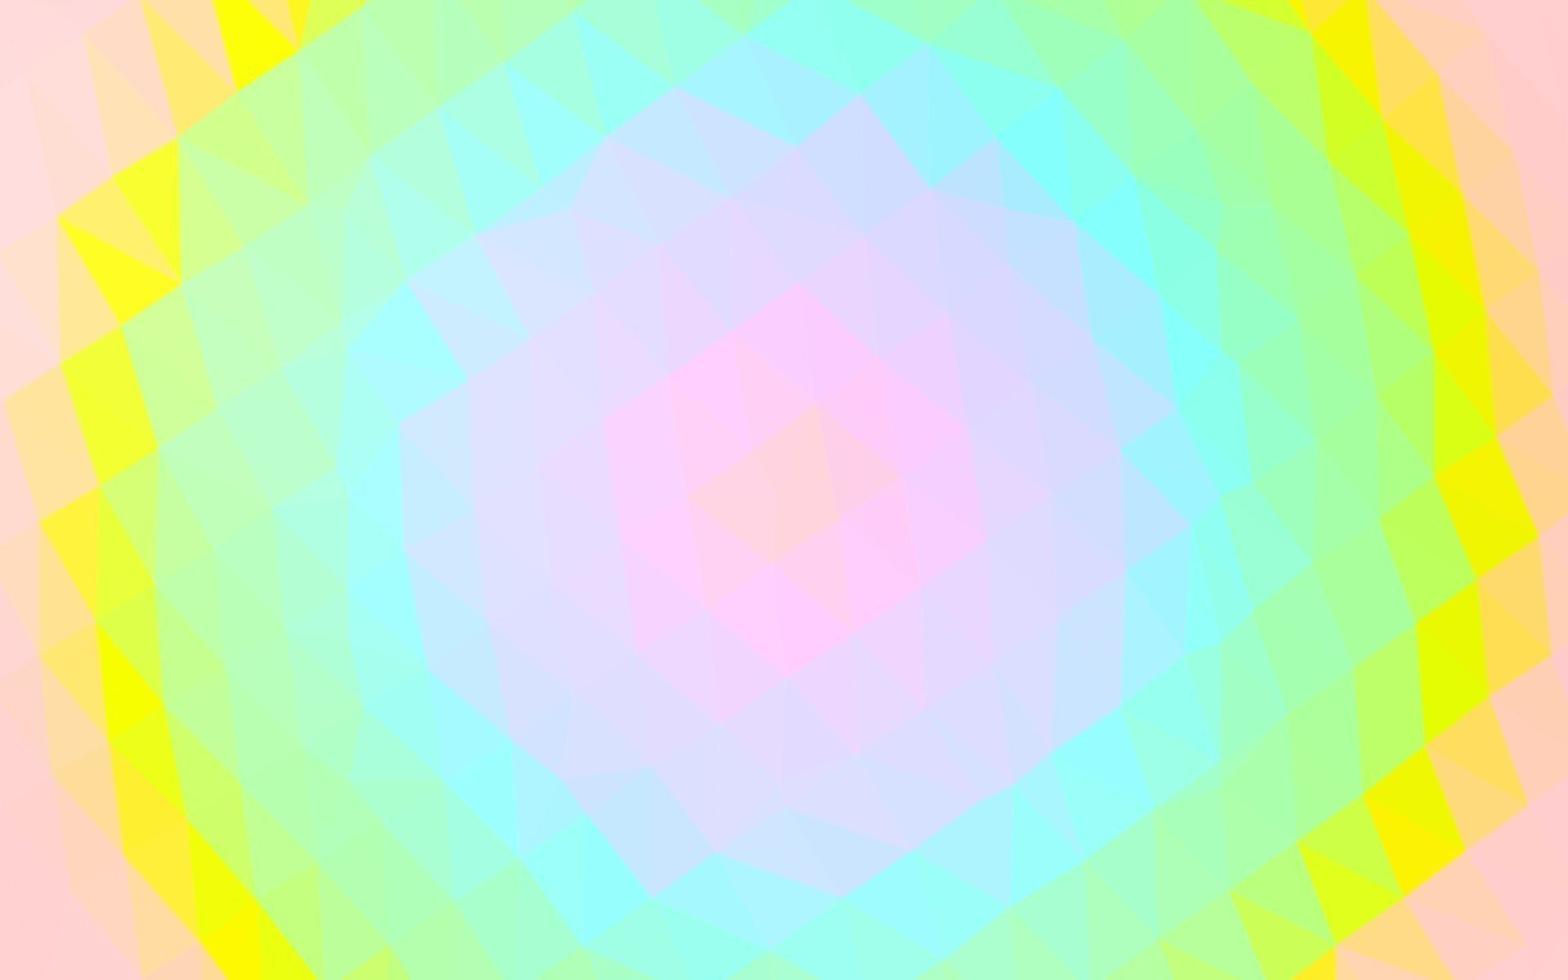 multicolore chiaro, layout poligonale astratto vettoriale arcobaleno.